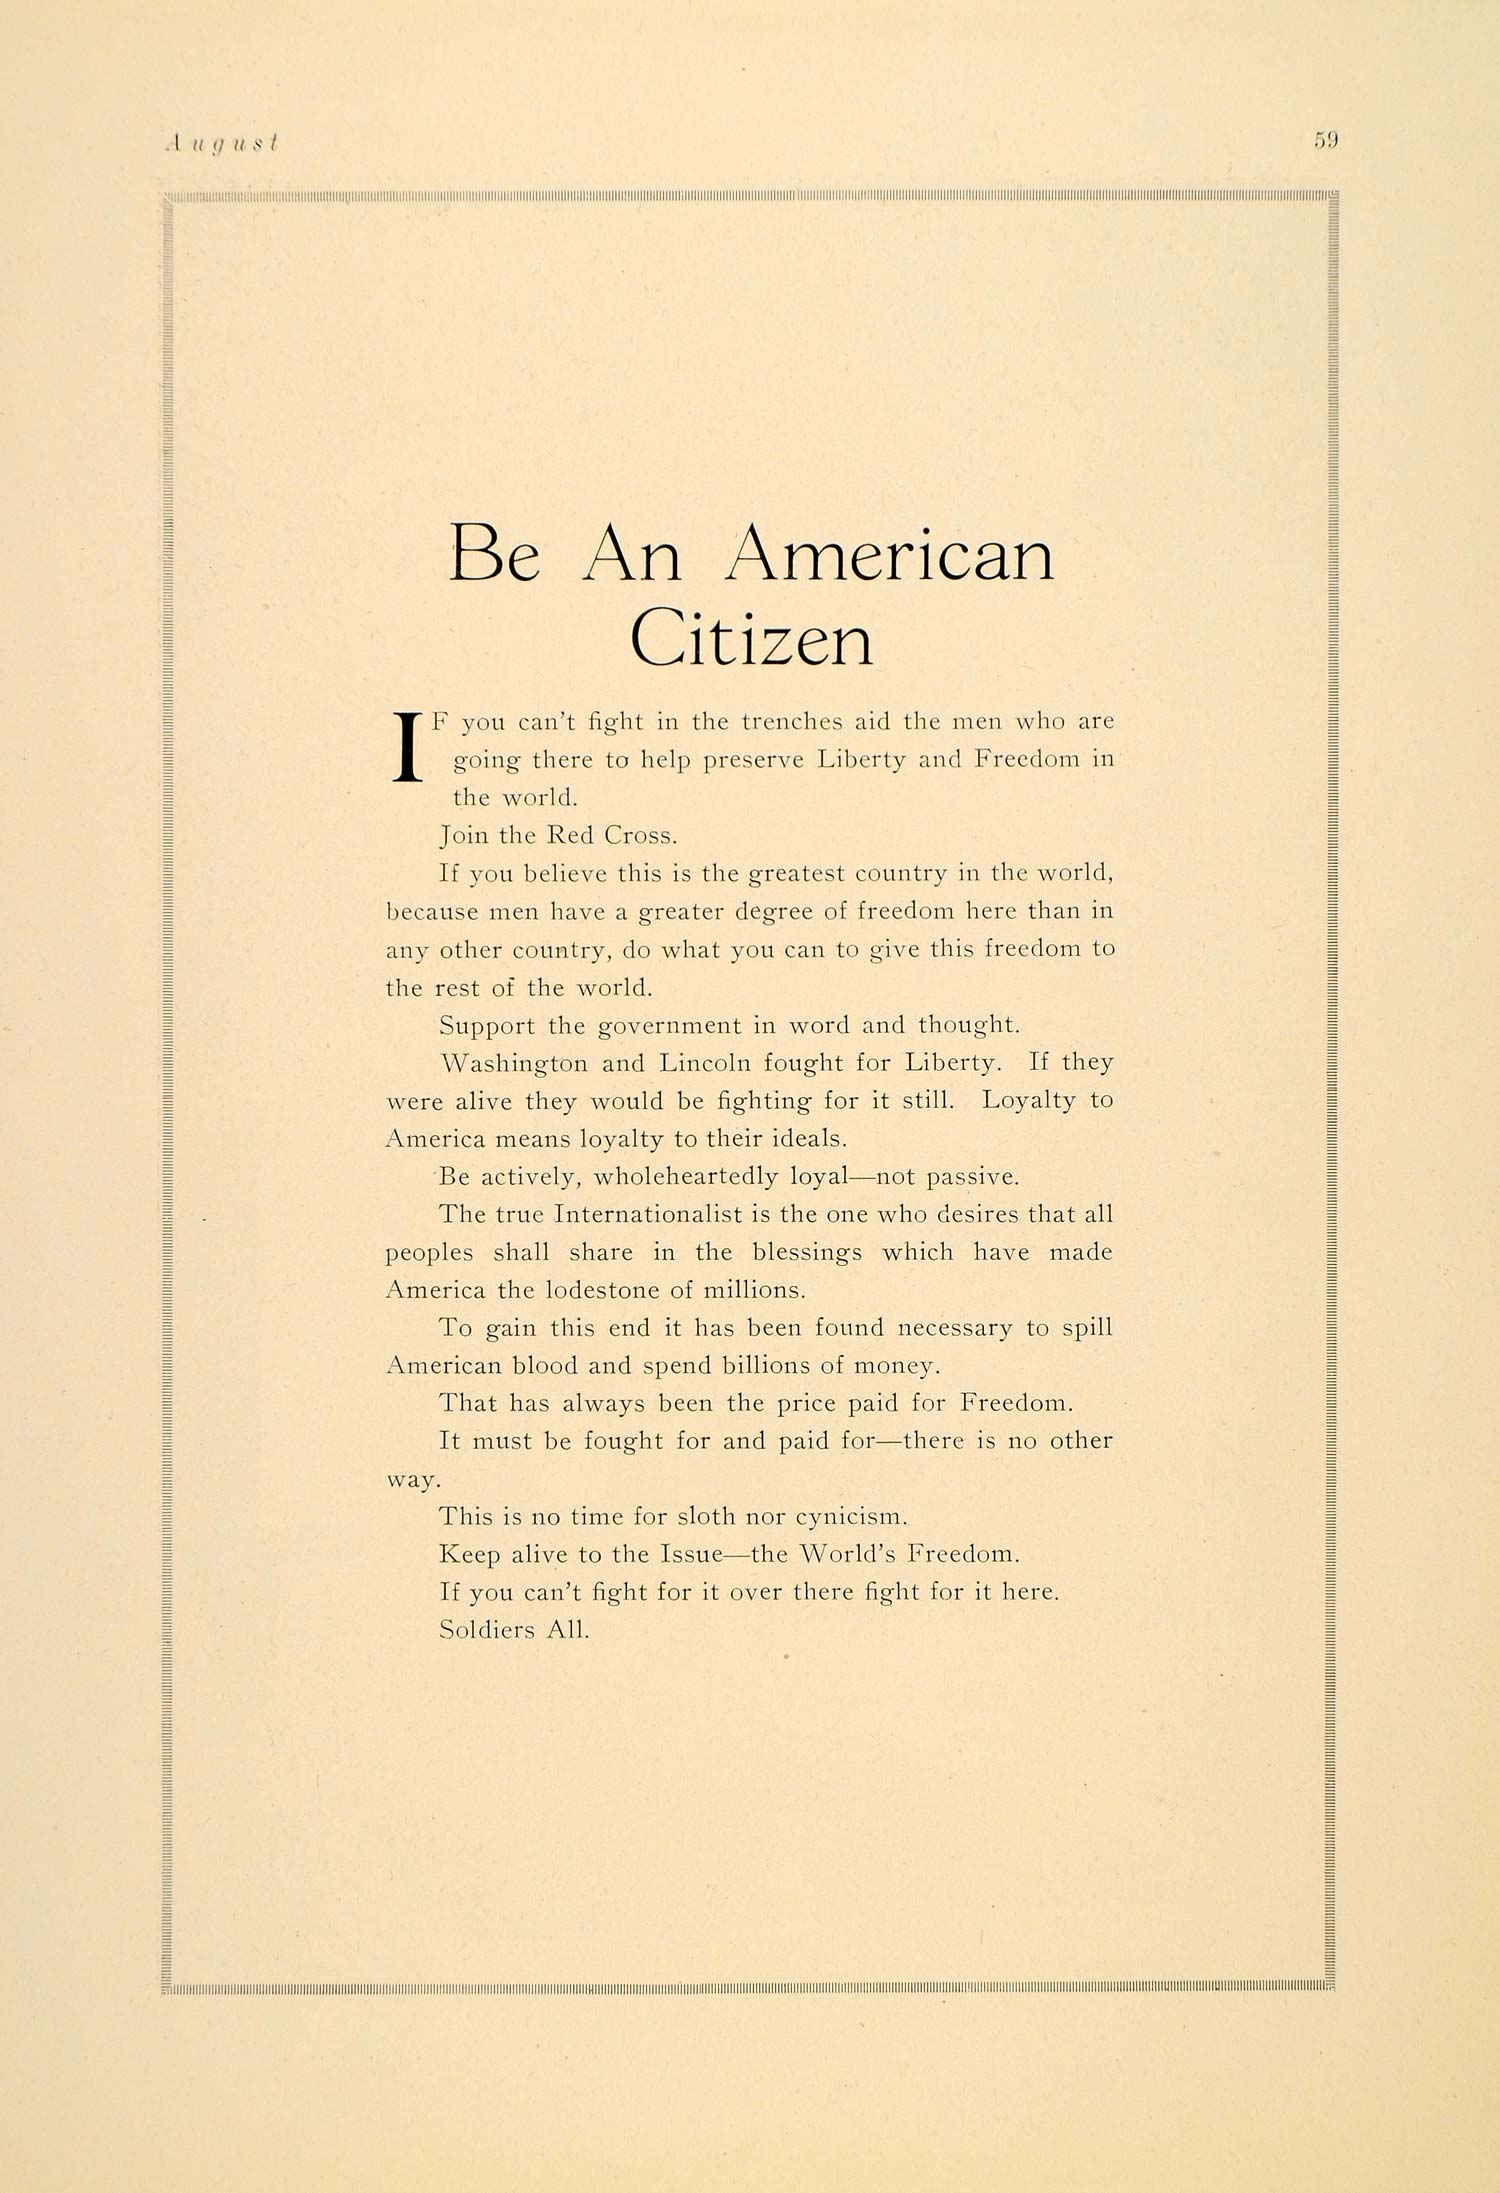 1917 American Citizen WWI Patriotism Patriotic Message - ORIGINAL PO2